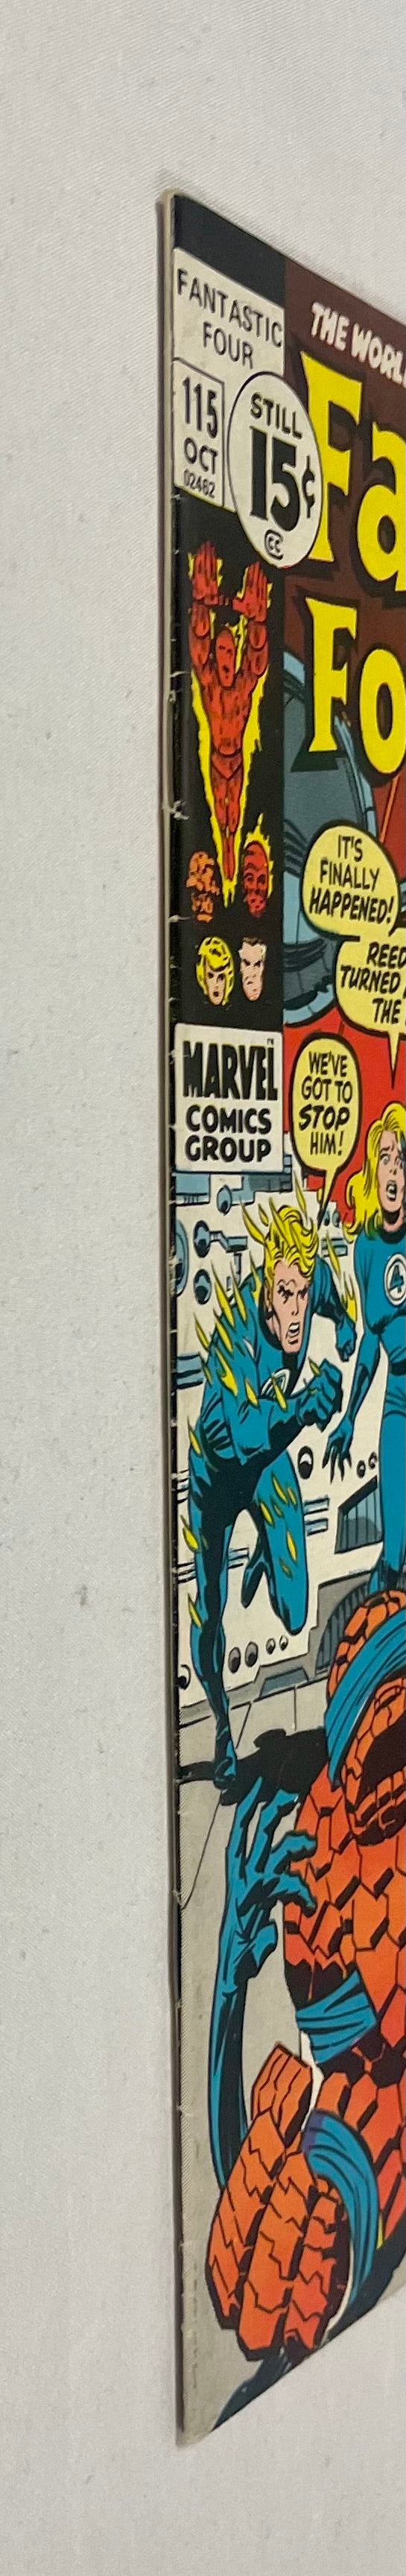 Marvel Comics Fantastic Four #115